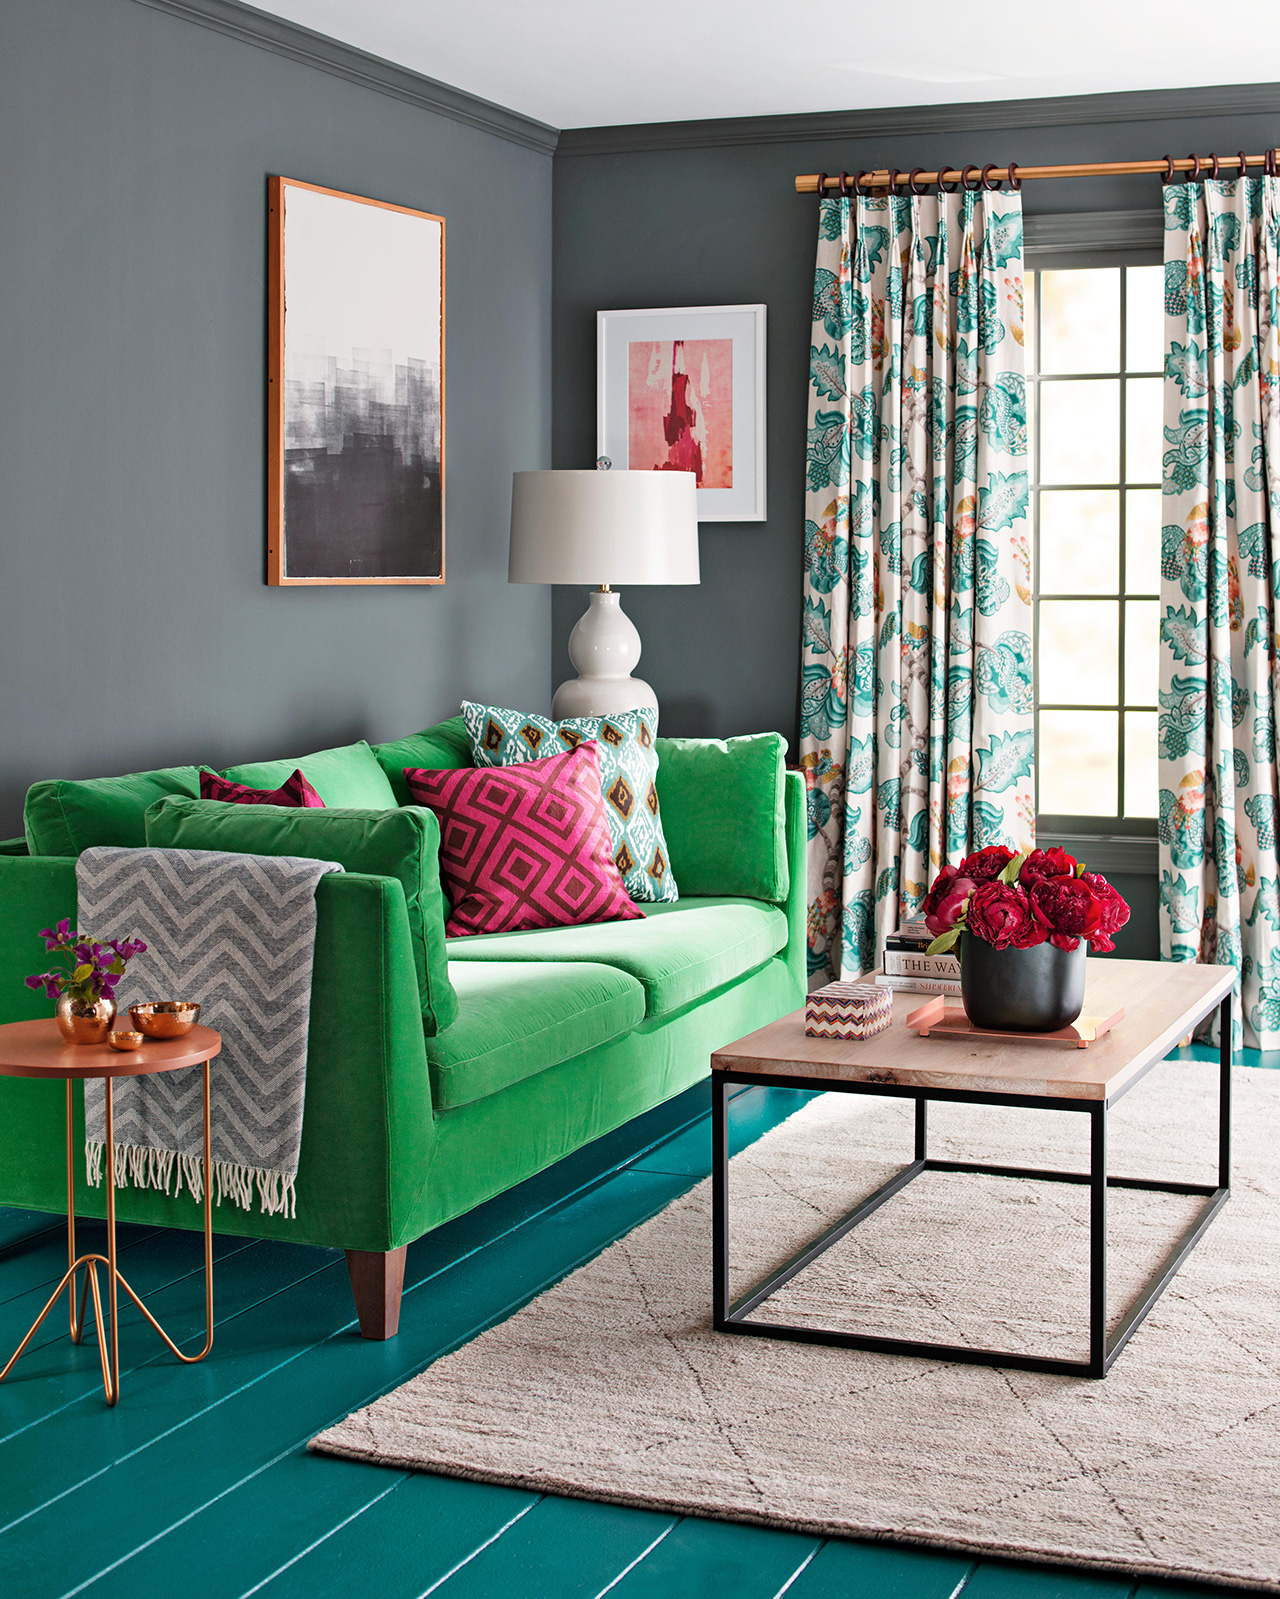 зеленый диван в интерьере зала